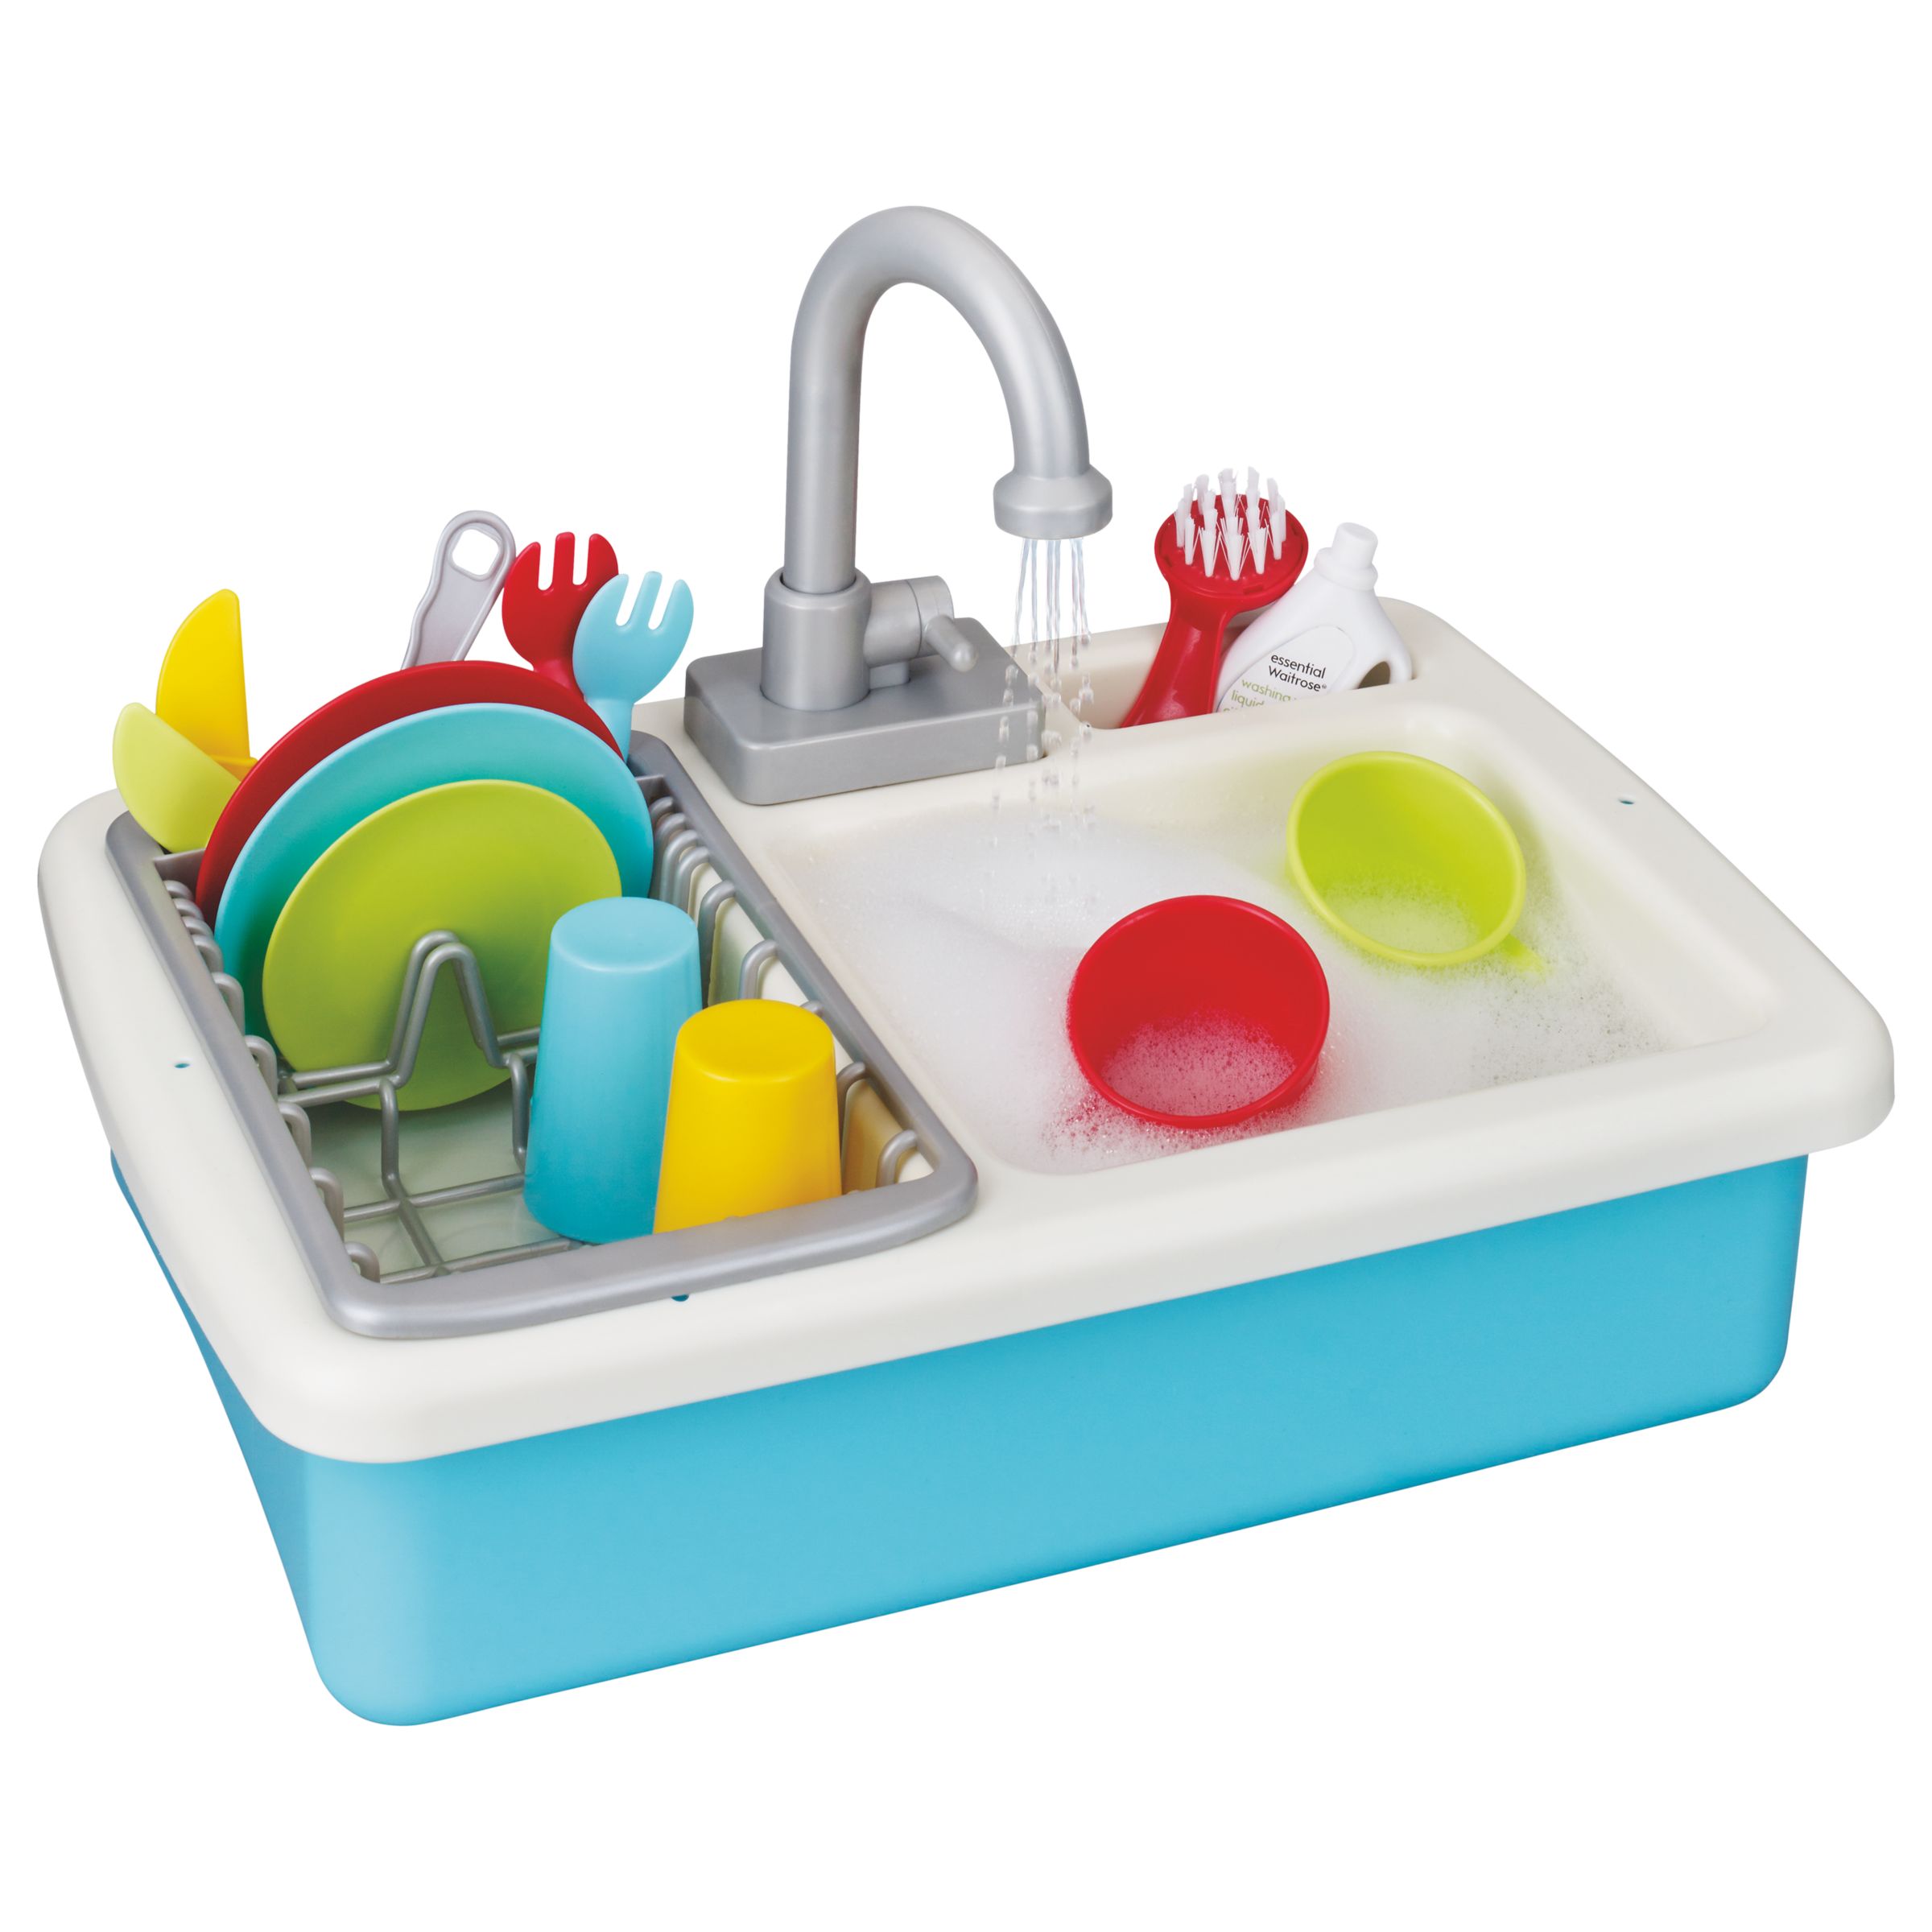 playgo wash up kitchen sink